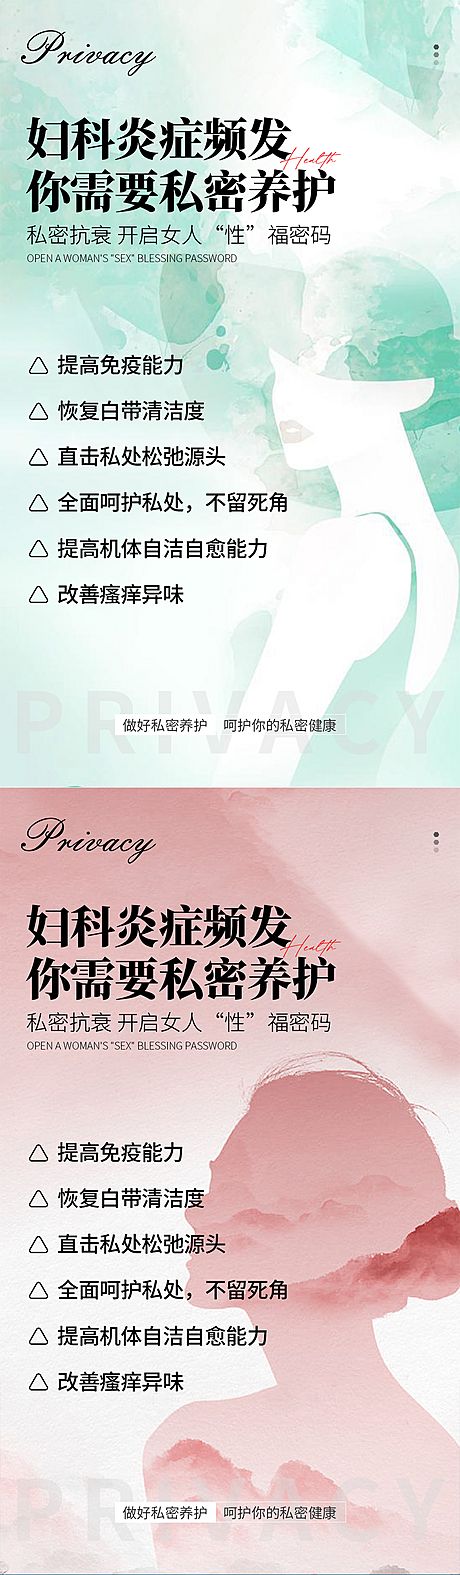 仙图网-私密养护系列海报